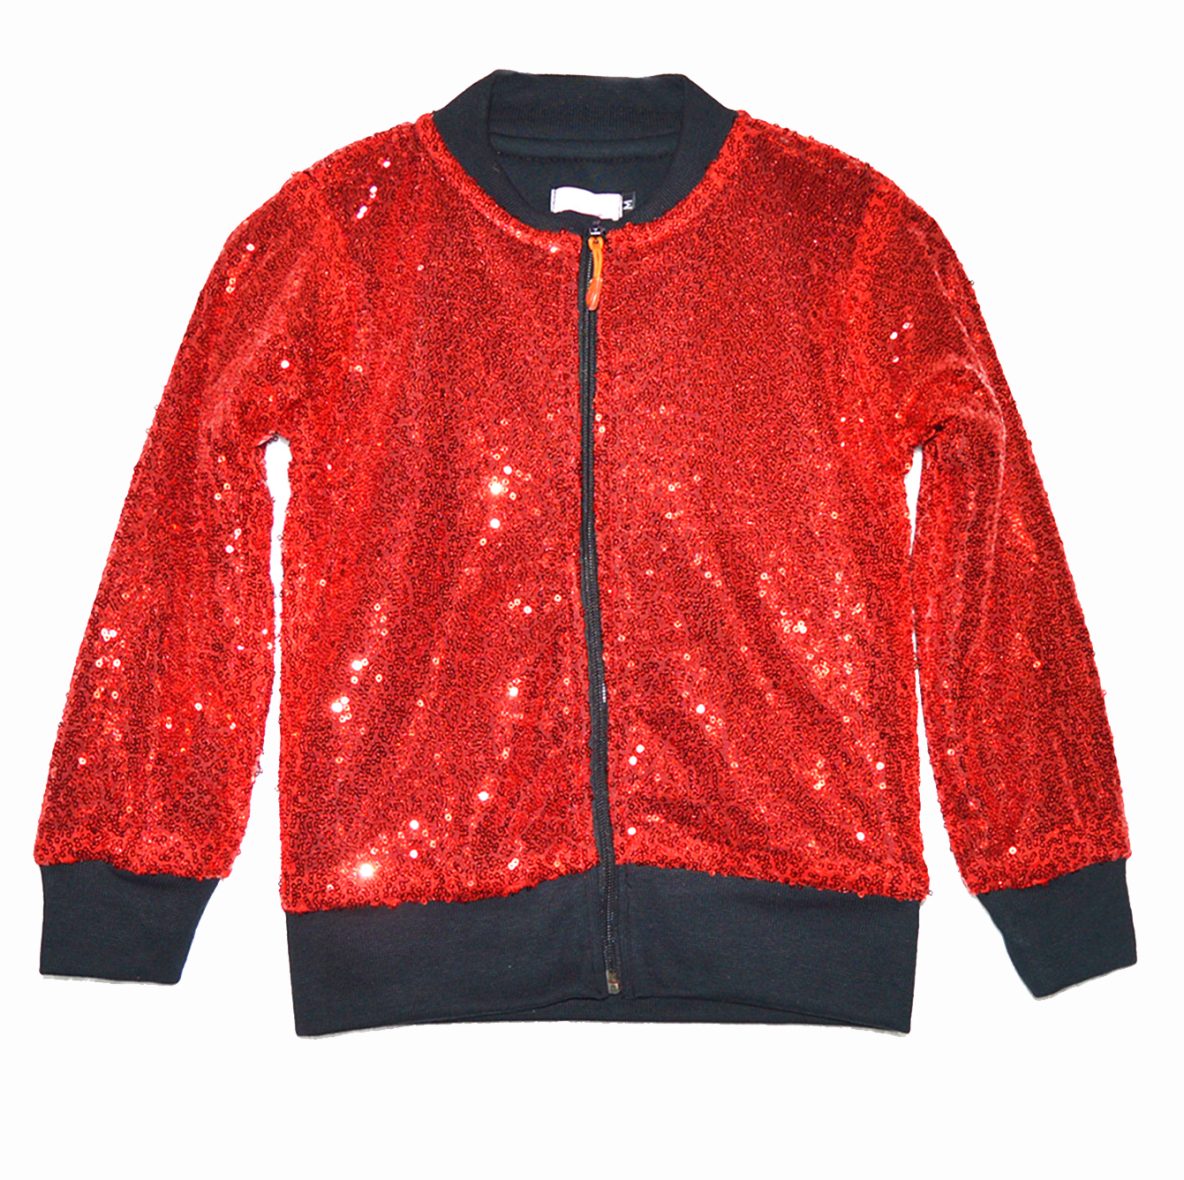 Red sequin Jacket